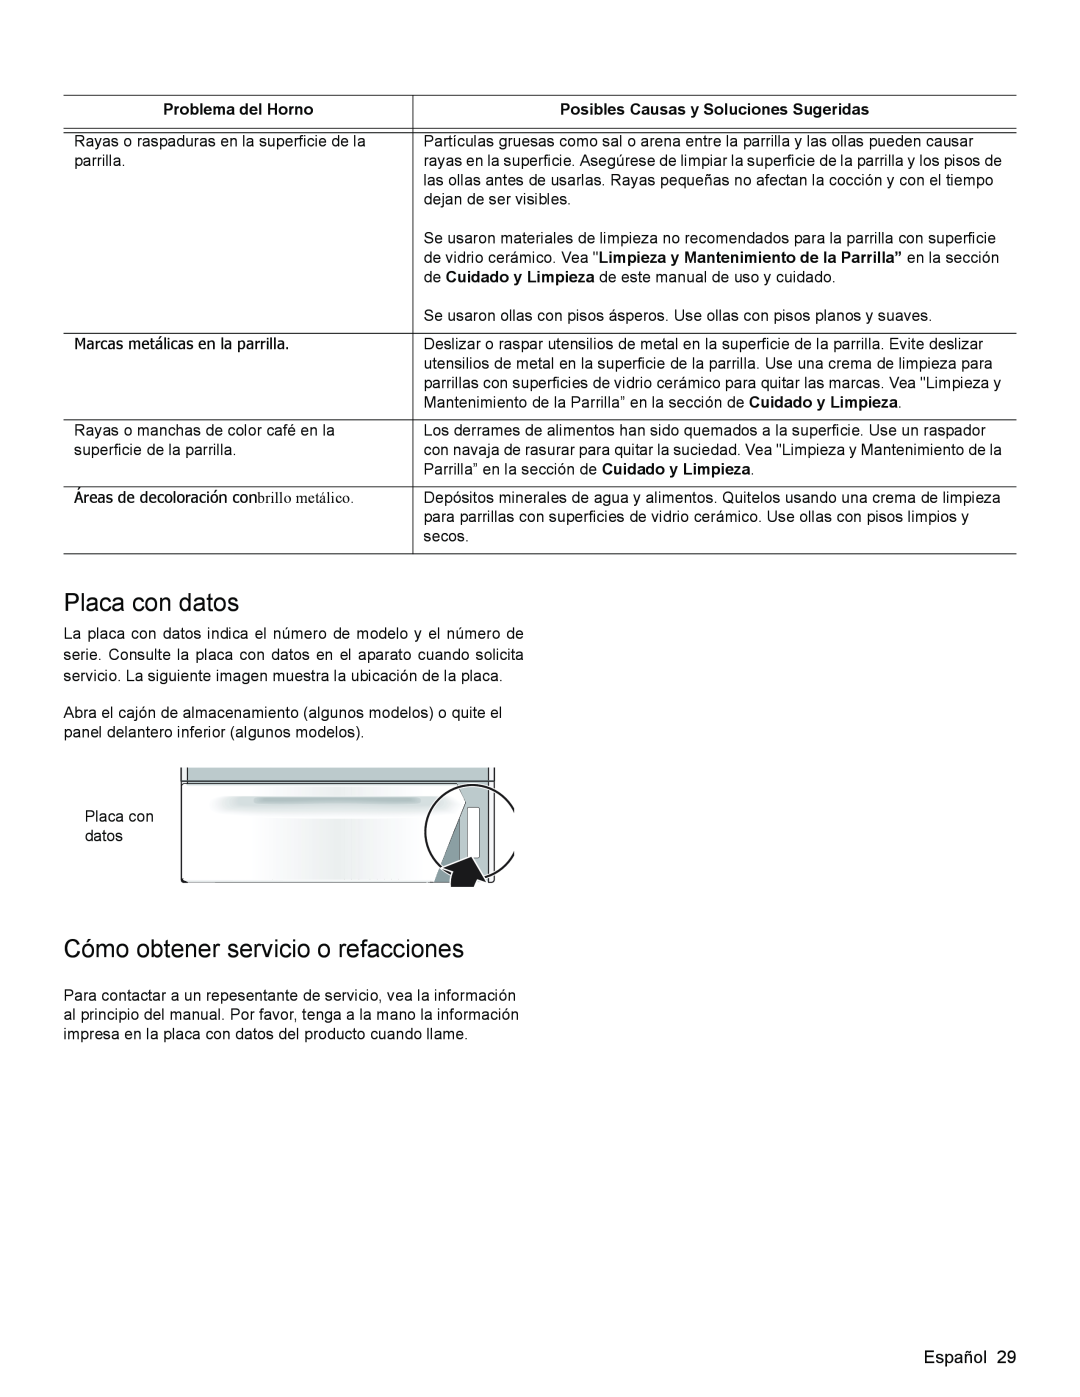 Bosch Appliances HES3053U manual Placa con datos, Cómo obtener servicio o refacciones, Problema del Horno 